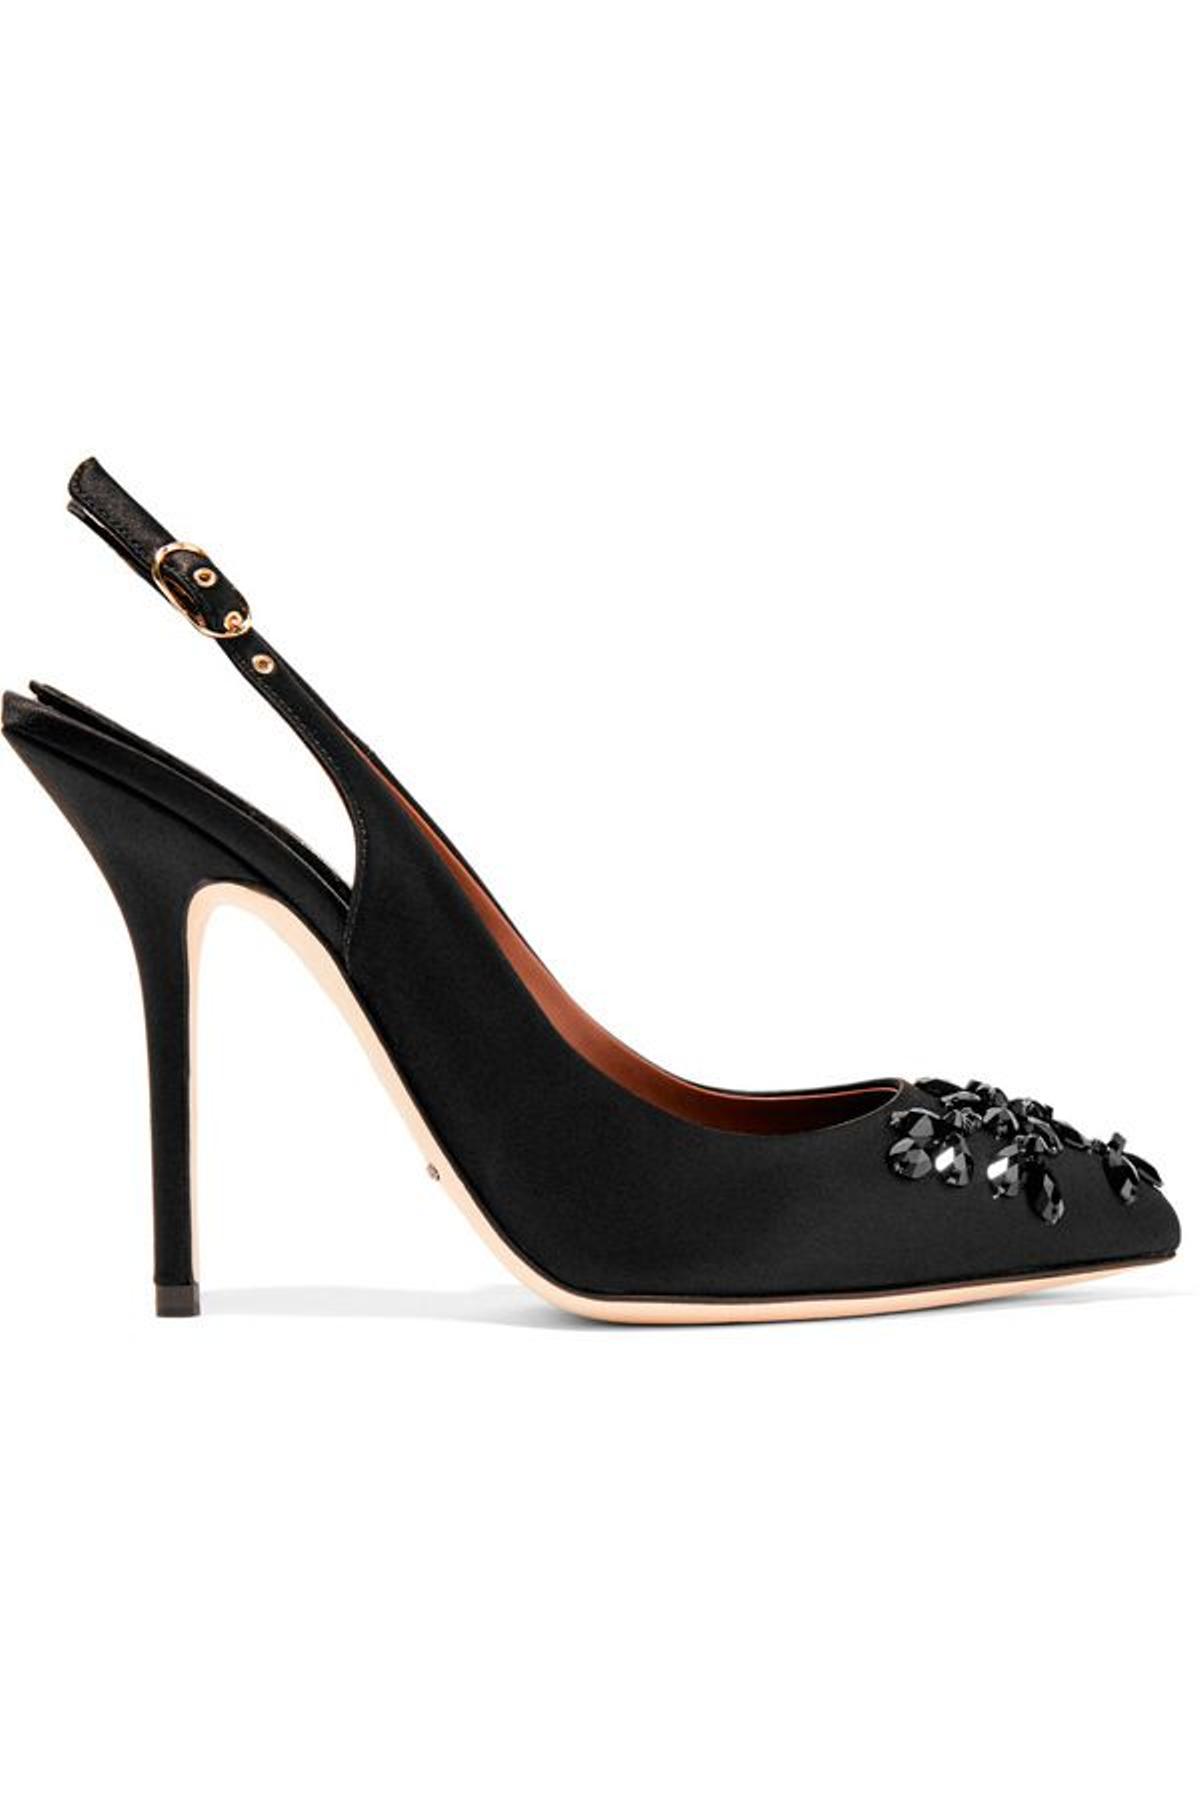 Lujos en rebajas a tus pies: zapato de Dolce &amp; Gabbana